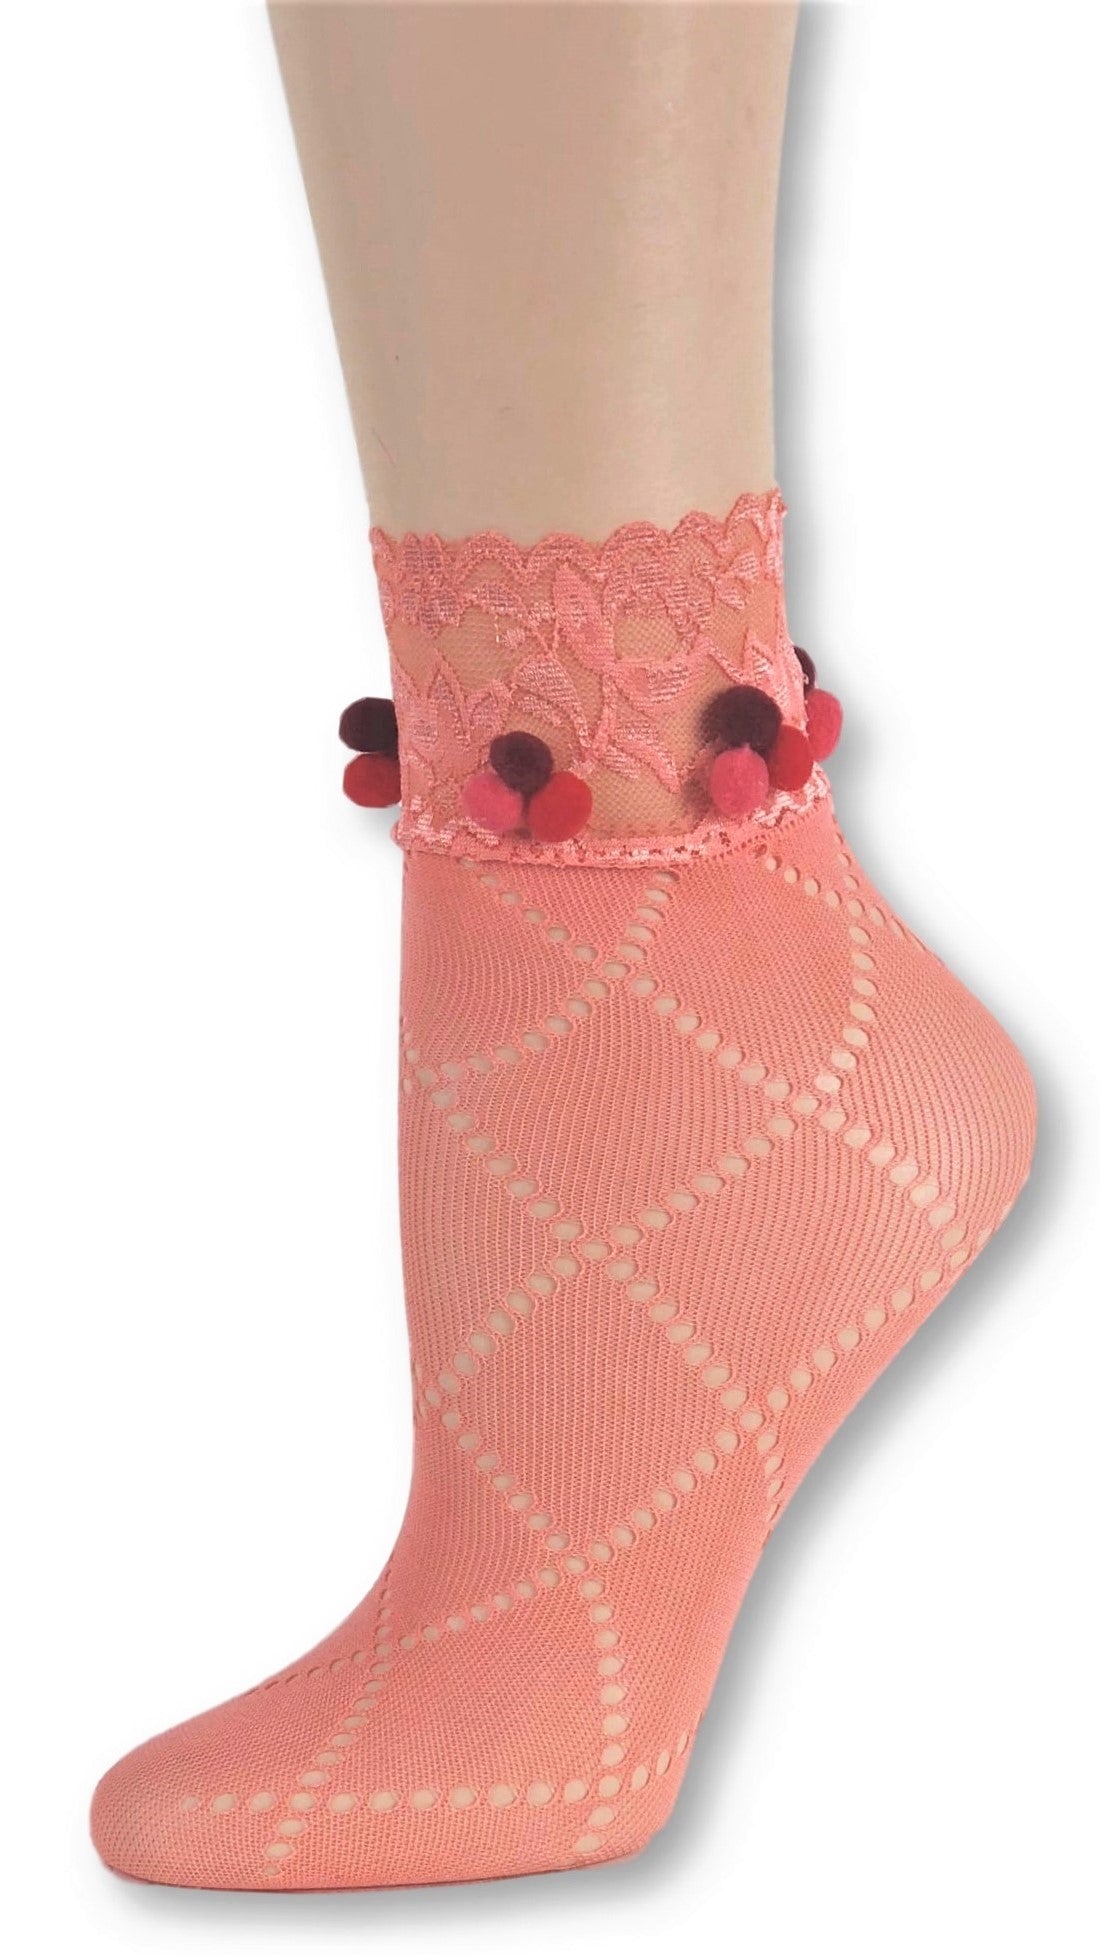 Glowing Orange Custom Mesh Socks with pompom - Global Trendz Fashion®